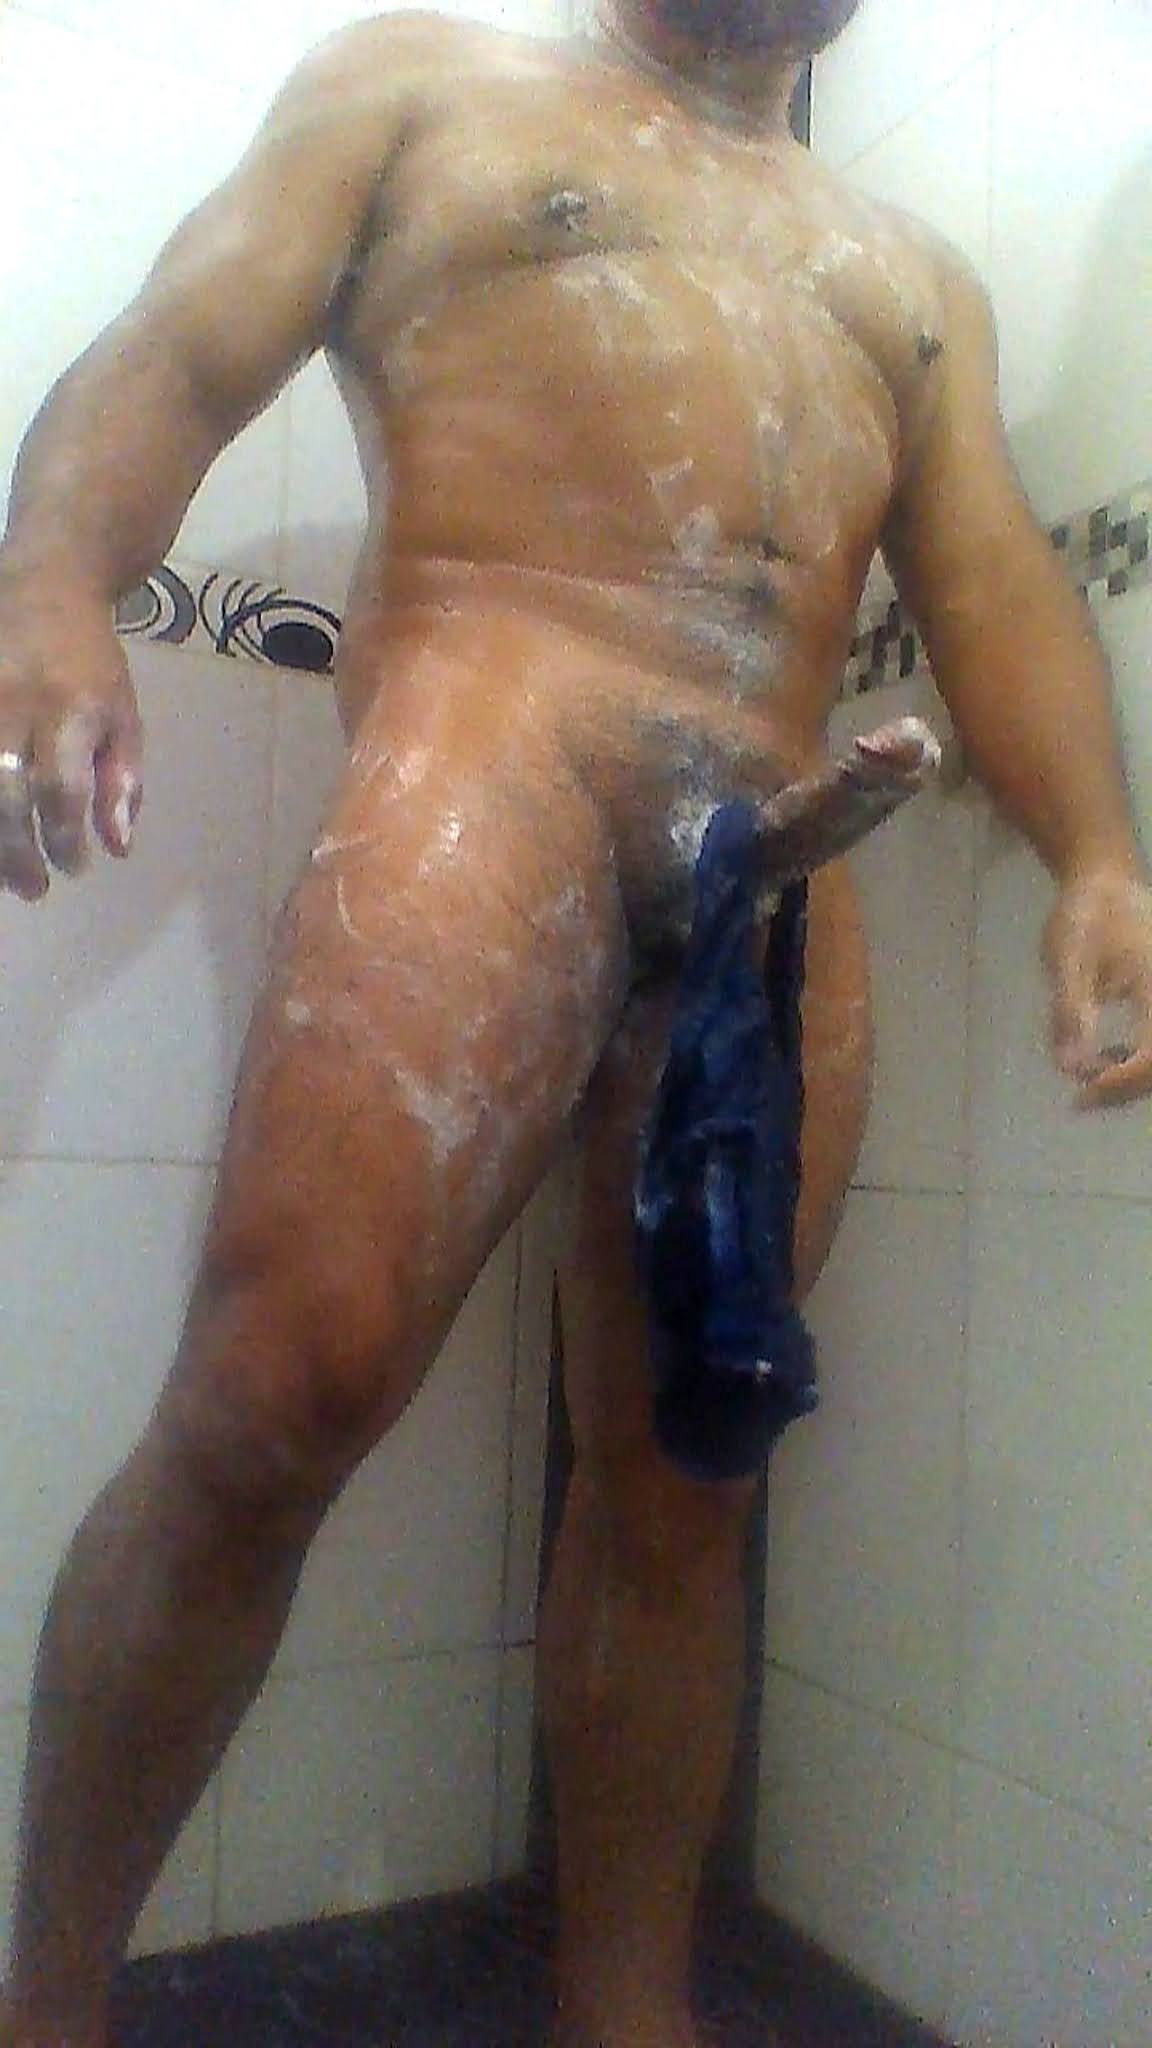 padre desnudos y erecto en la ducha